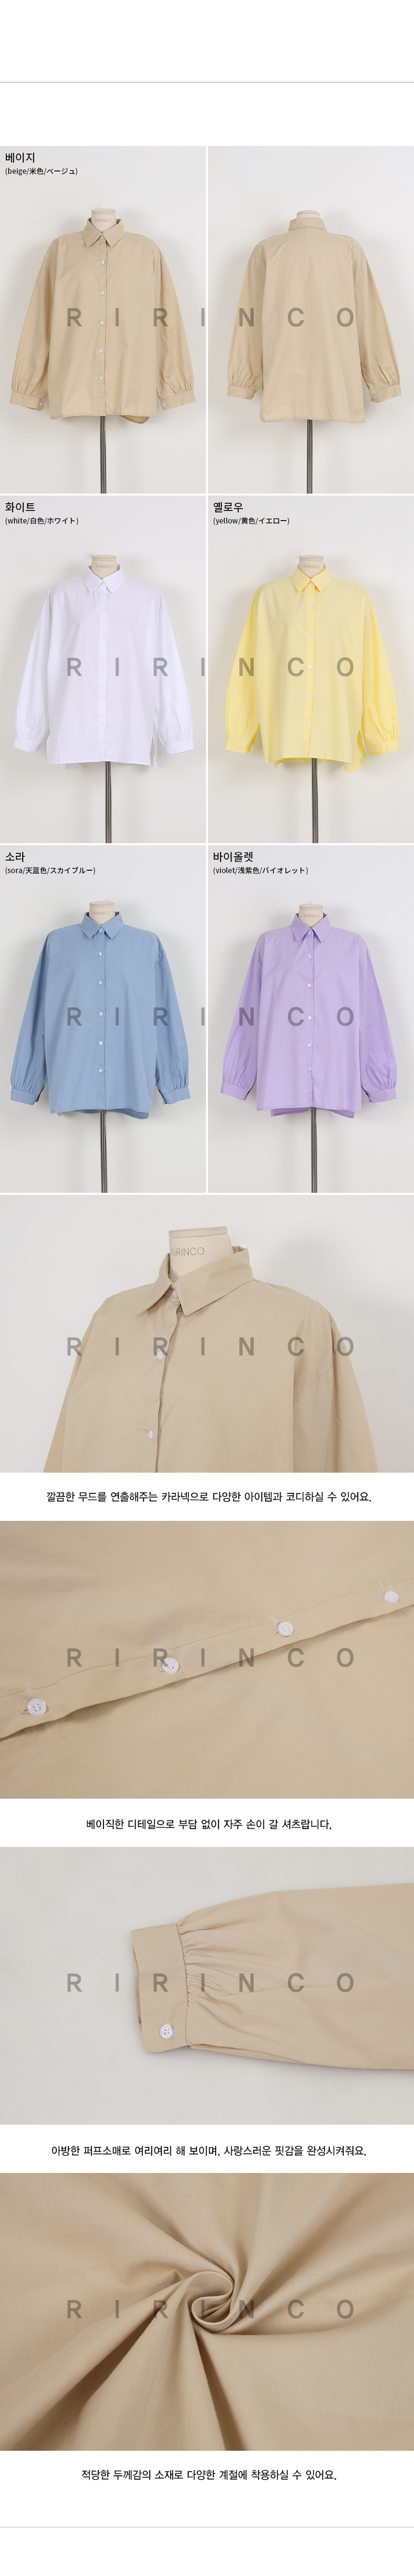 RIRINCO ベーシックカラーネックシャツ